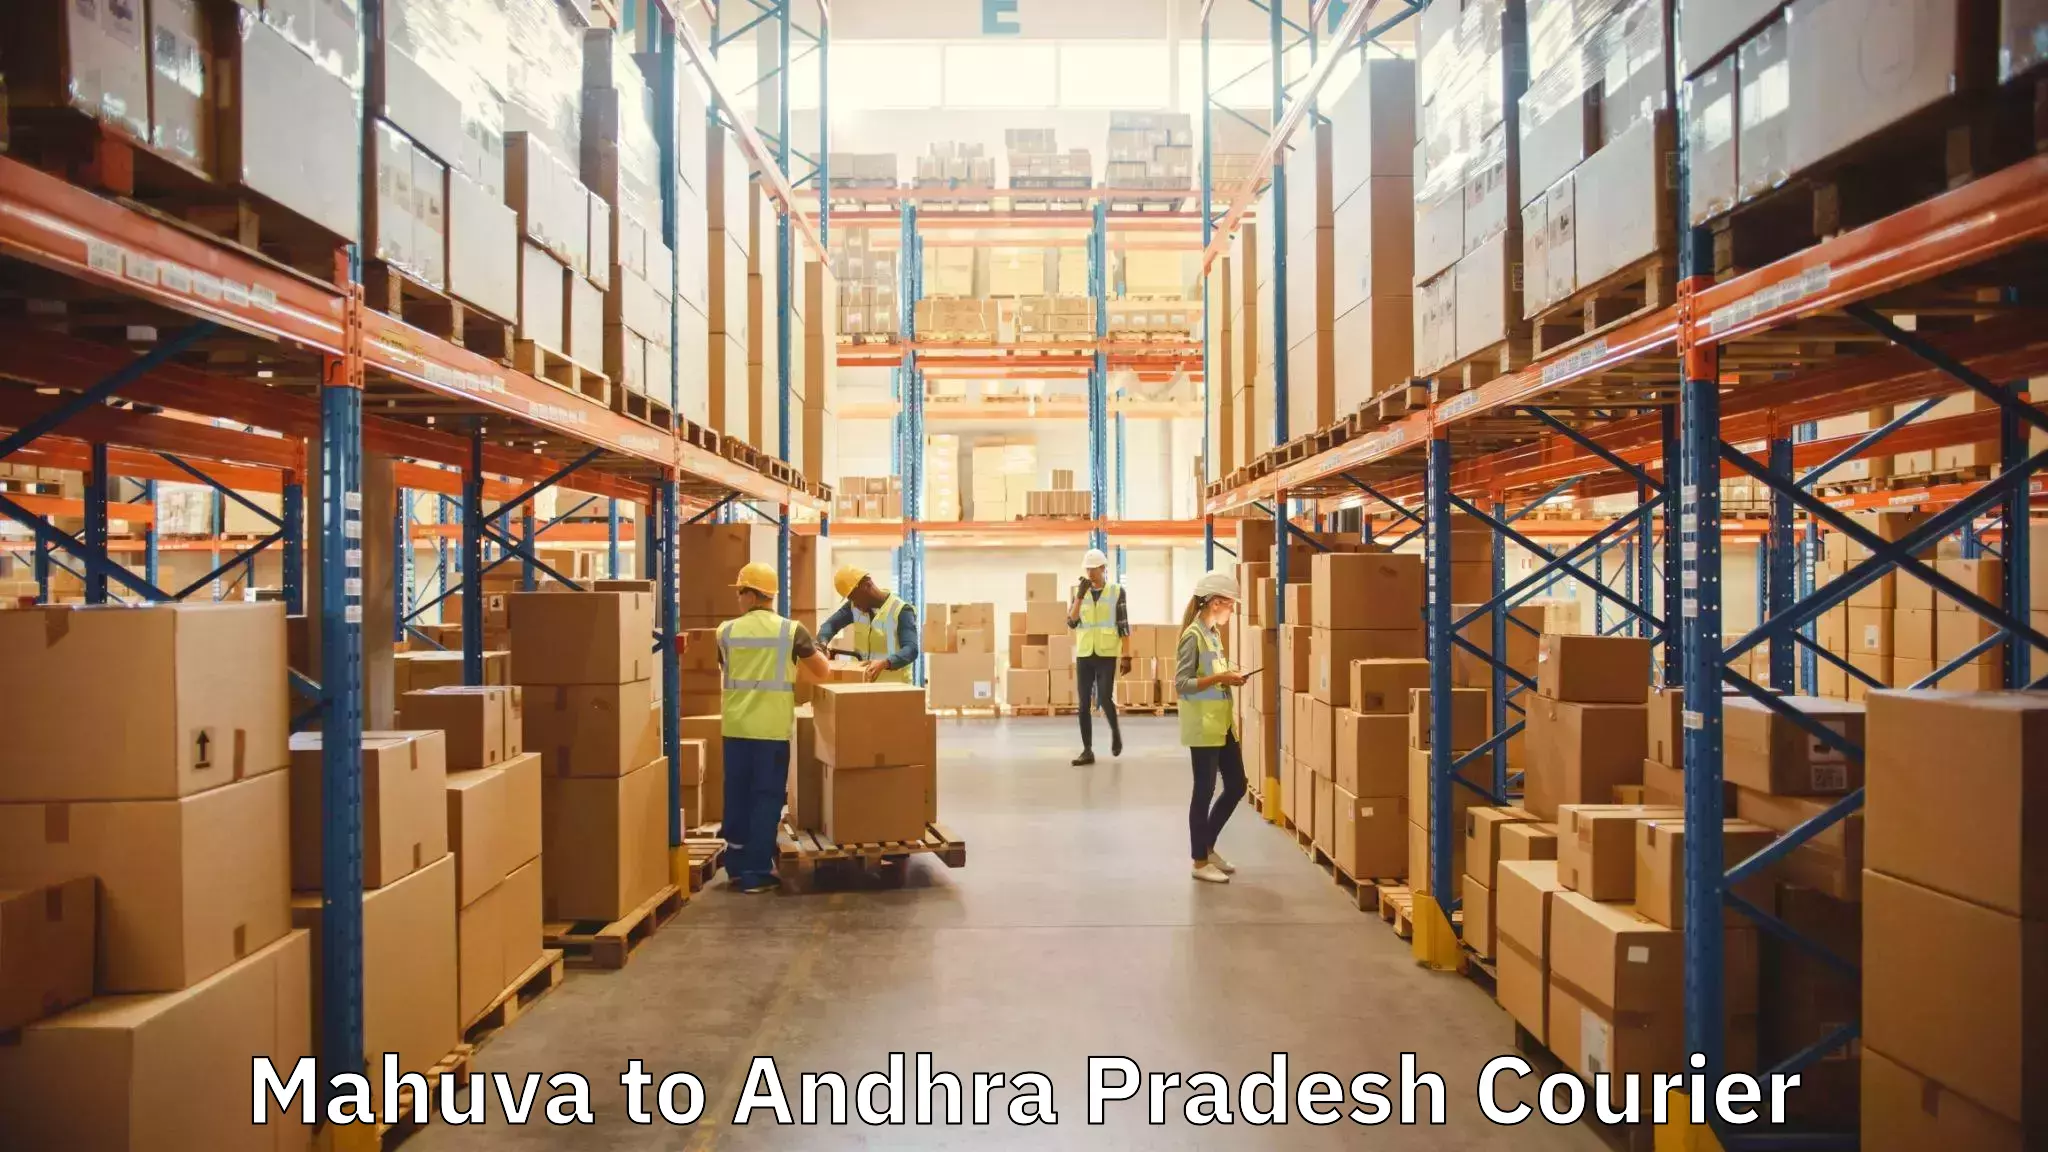 Professional moving assistance Mahuva to Konthamuru